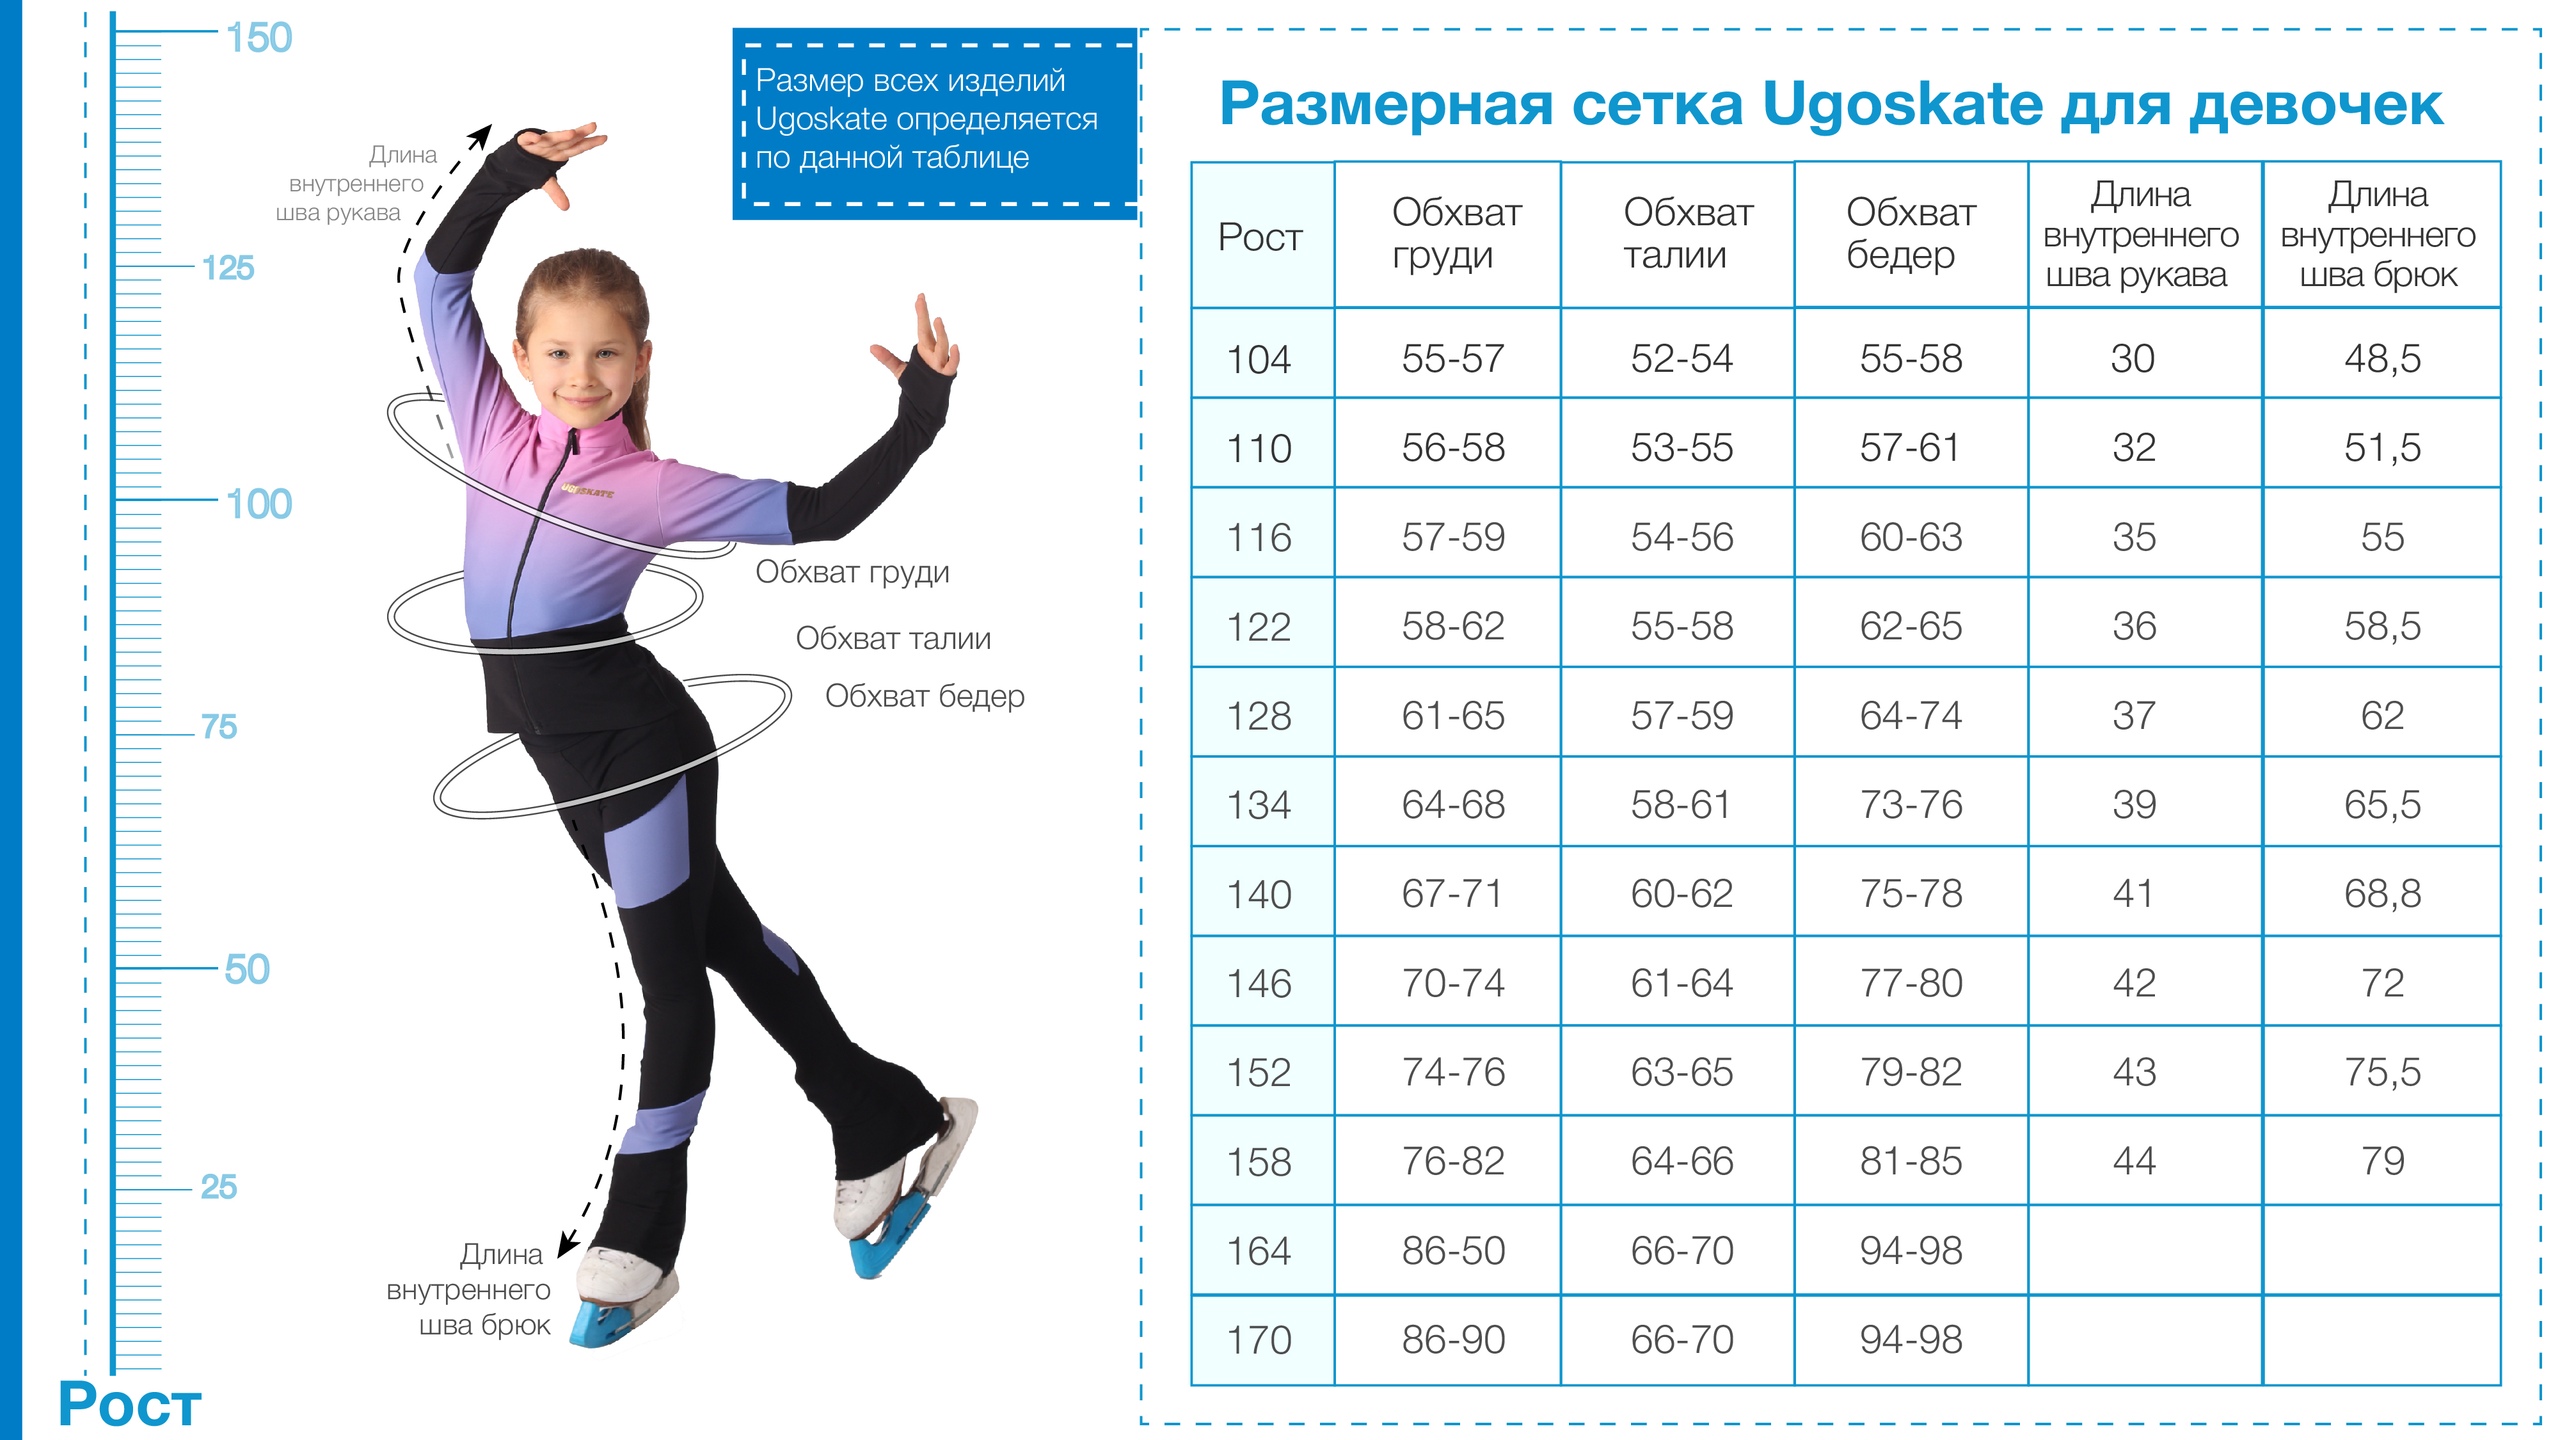 Таблица размерных признаков одежды UGOSKATE для девочек.